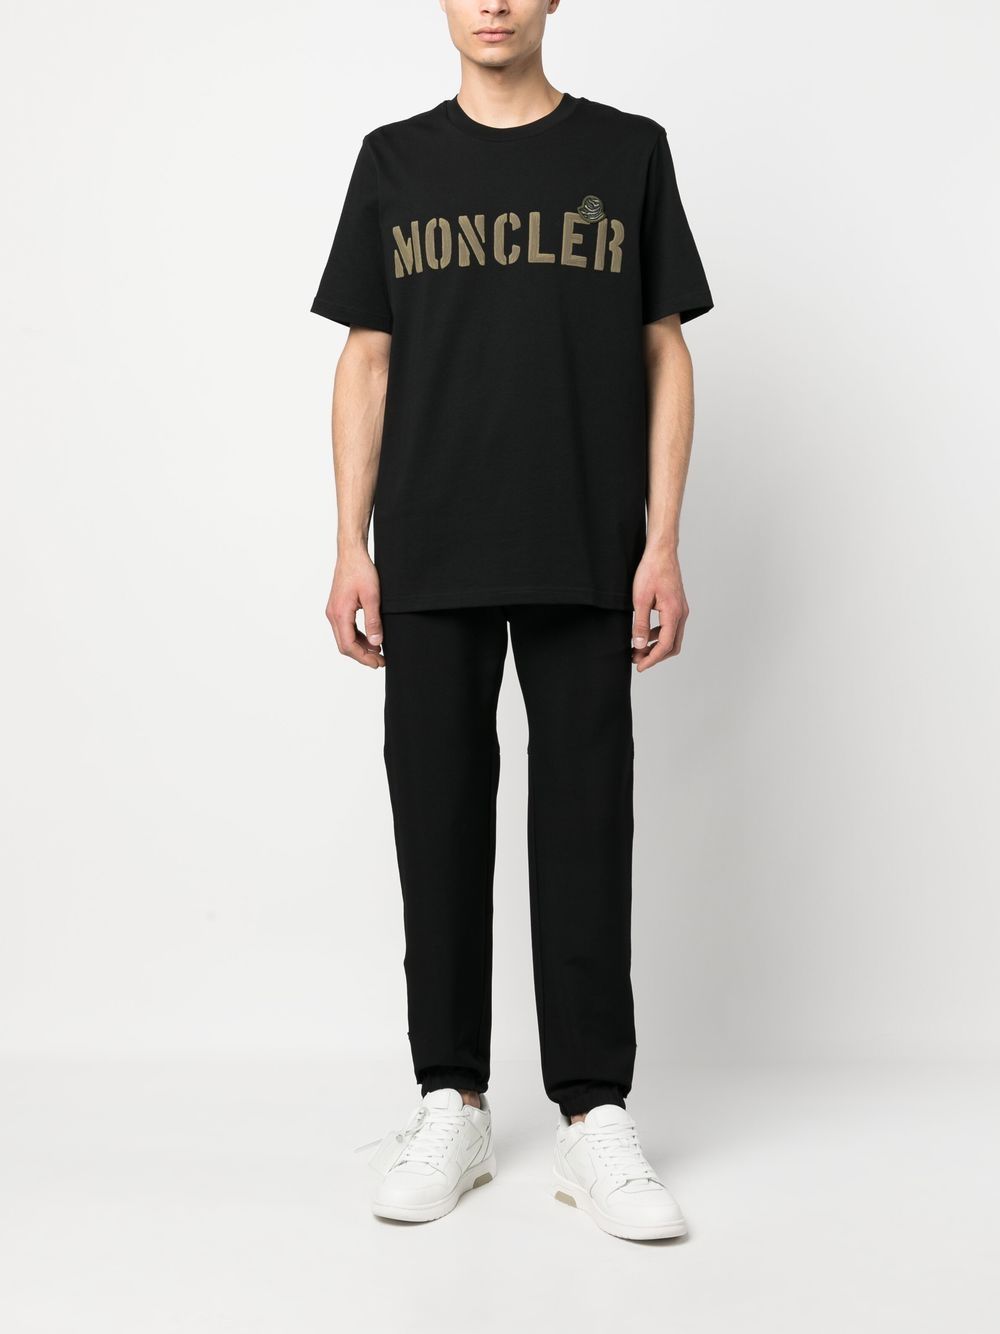 Moncler ロゴ Tシャツ - Farfetch